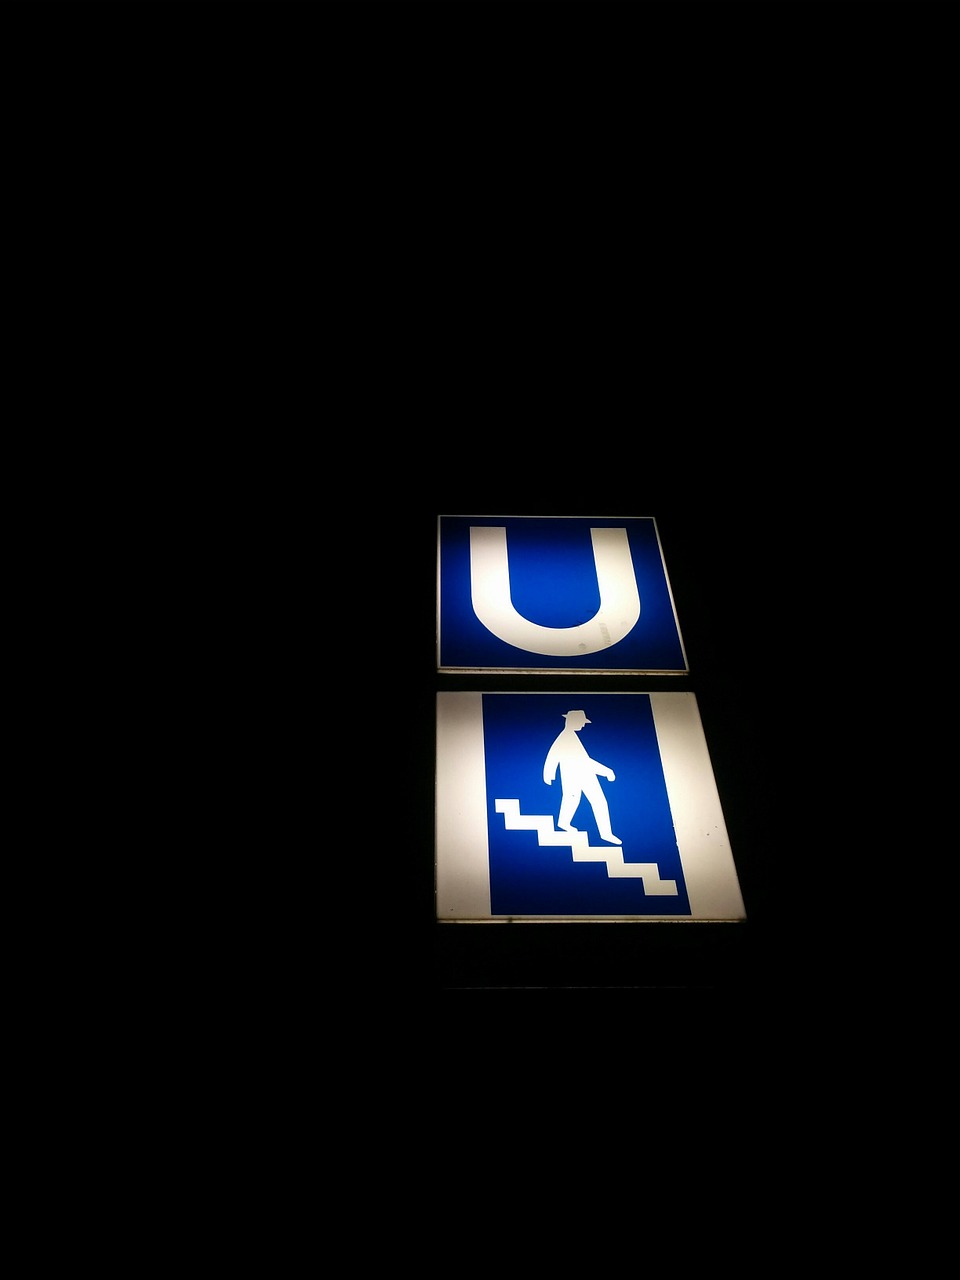 subway station sign underground free photo